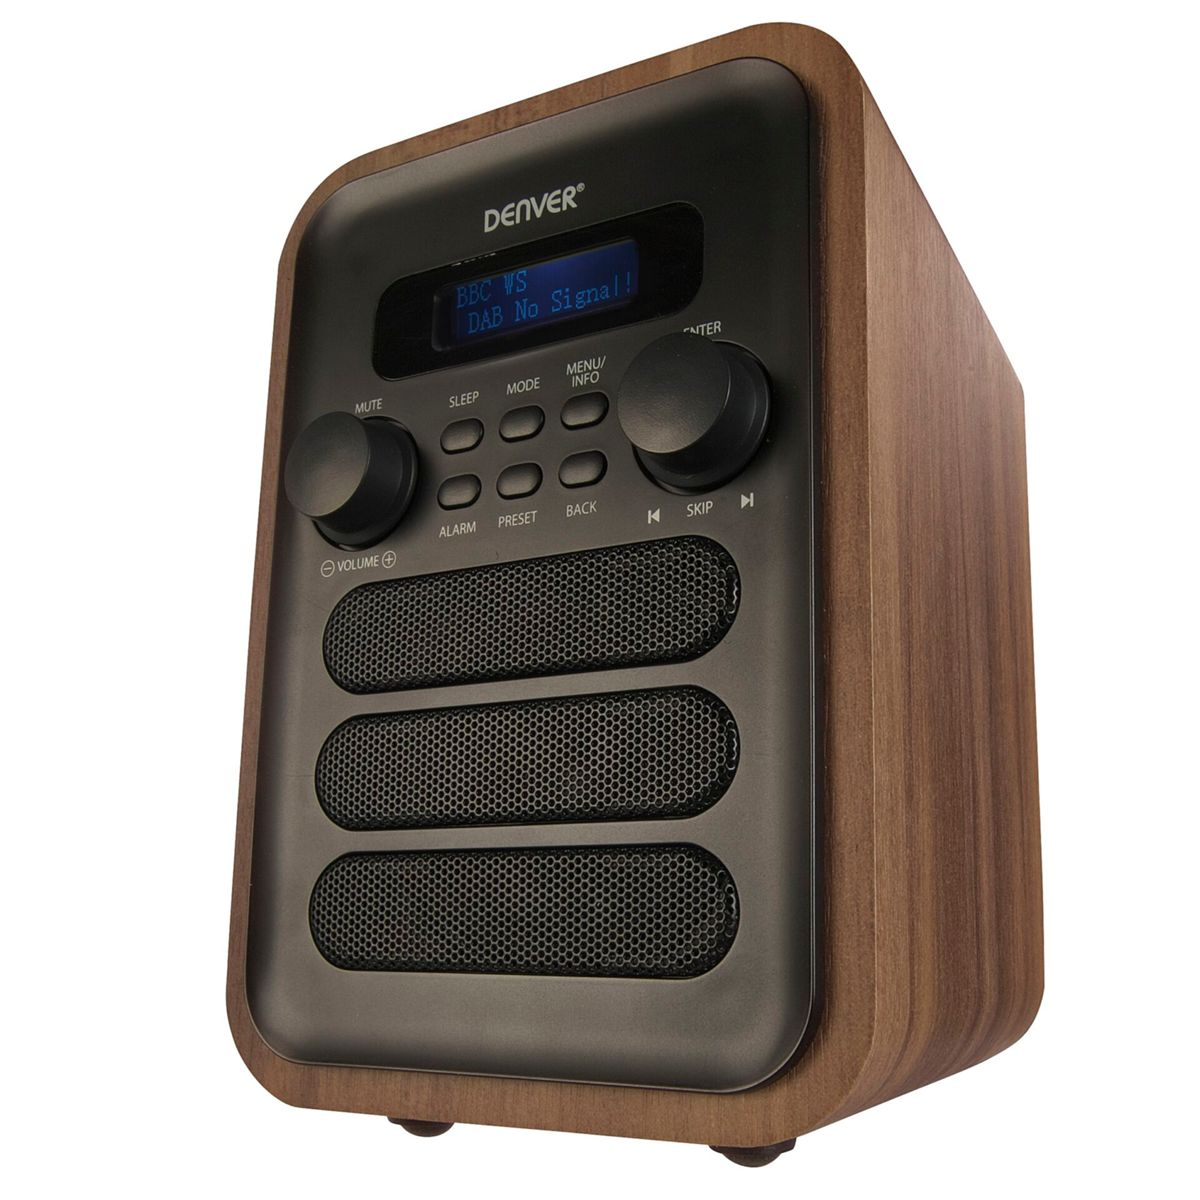 DENVER DAB-48 Digitalradio, grau, Bluetooth, DAB, braun FM, DAB